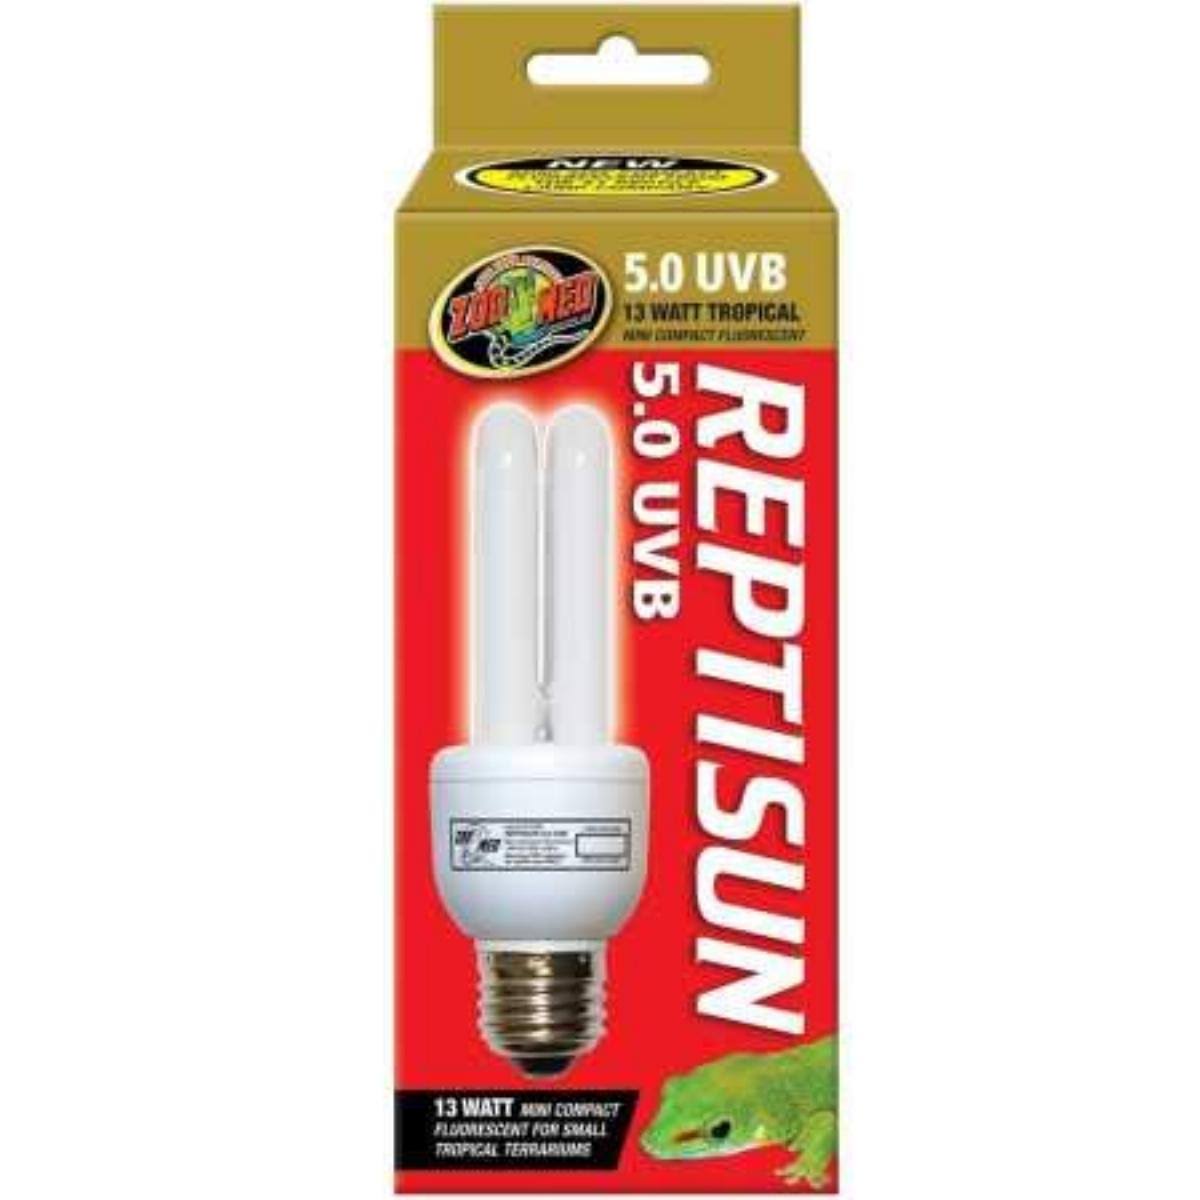 Zoo Med Reptisun 5.0 UVB Mini Compact Fluorescent Bulb - 13W